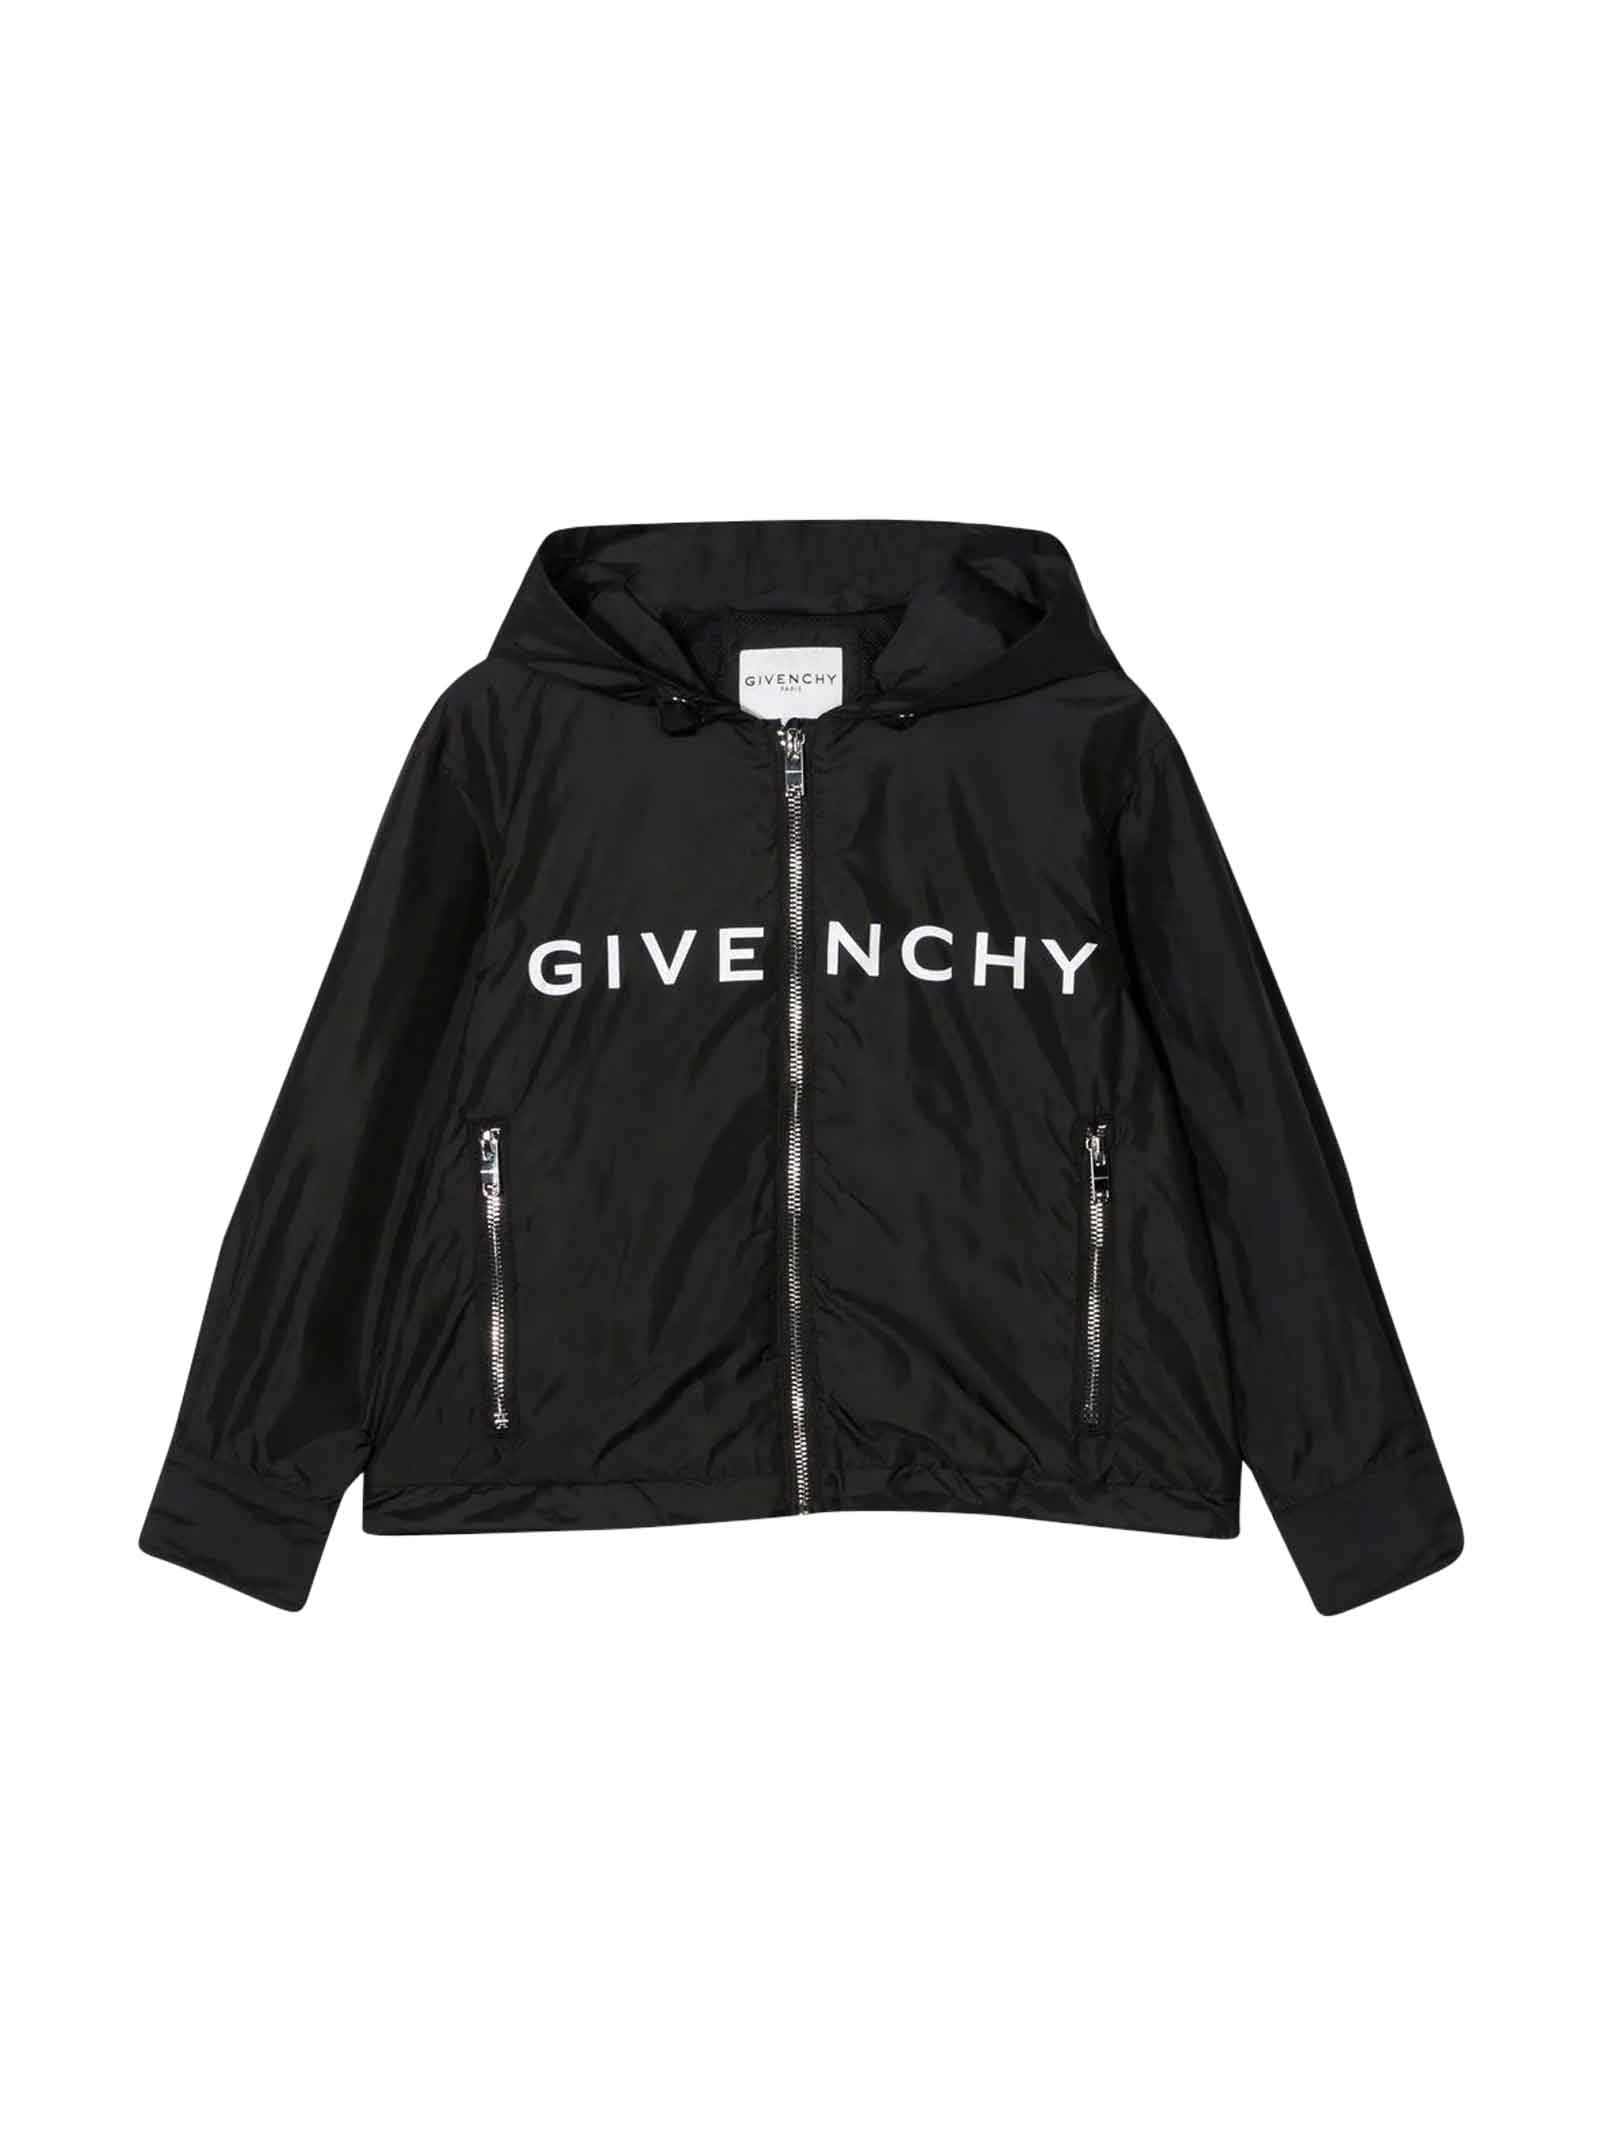 Givenchy Black Unisex Lightweight Jacket